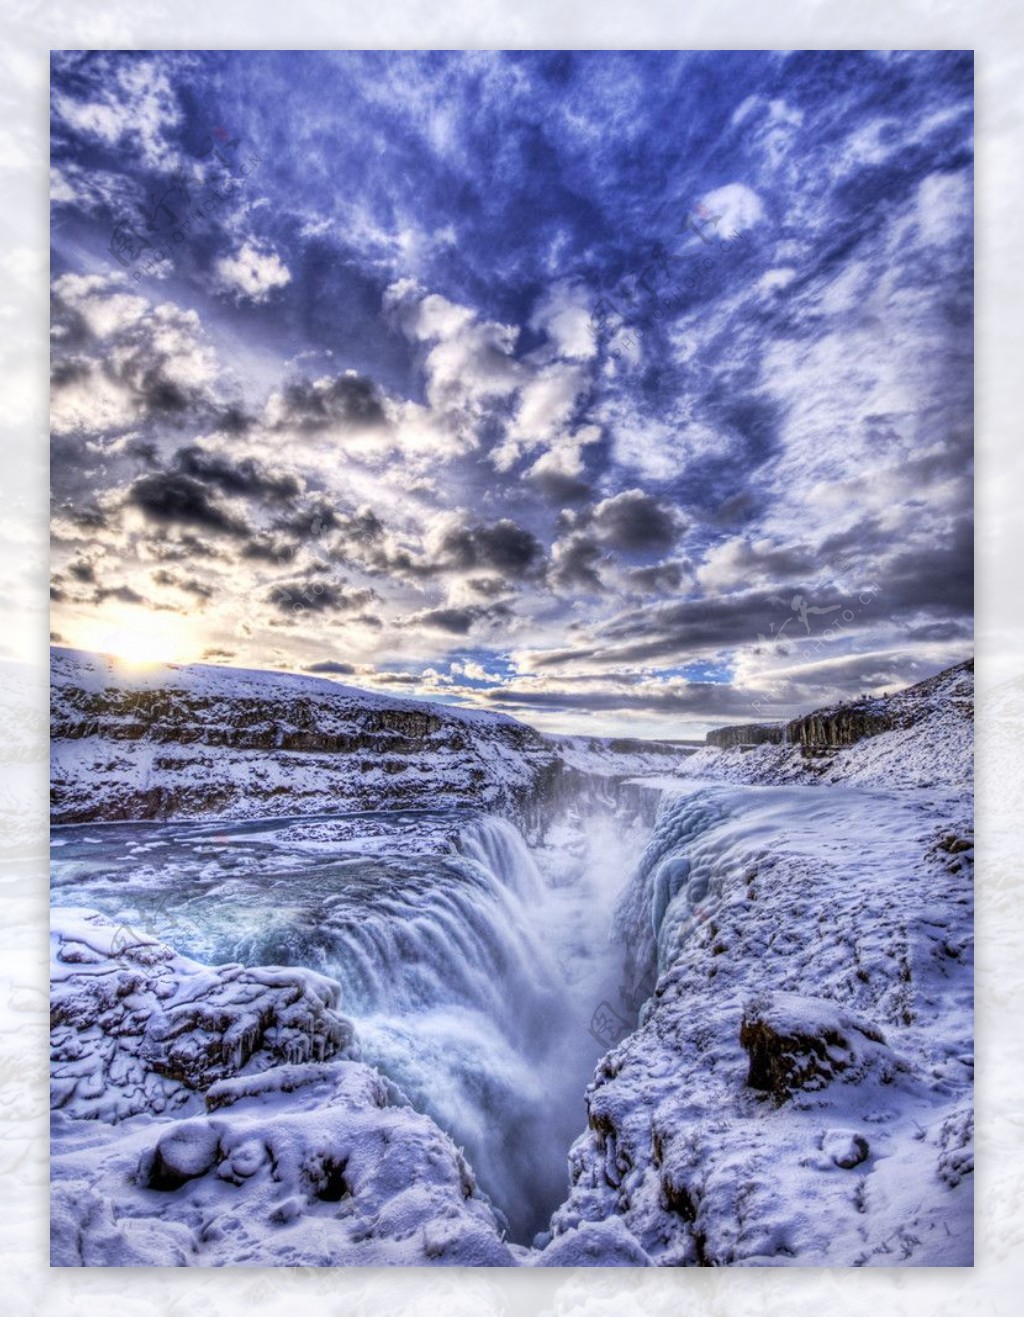 山水风景风景名胜建筑景观自然风景旅游印记冰冻的地狱冰岛冻结的瀑布雄伟澎湃图片